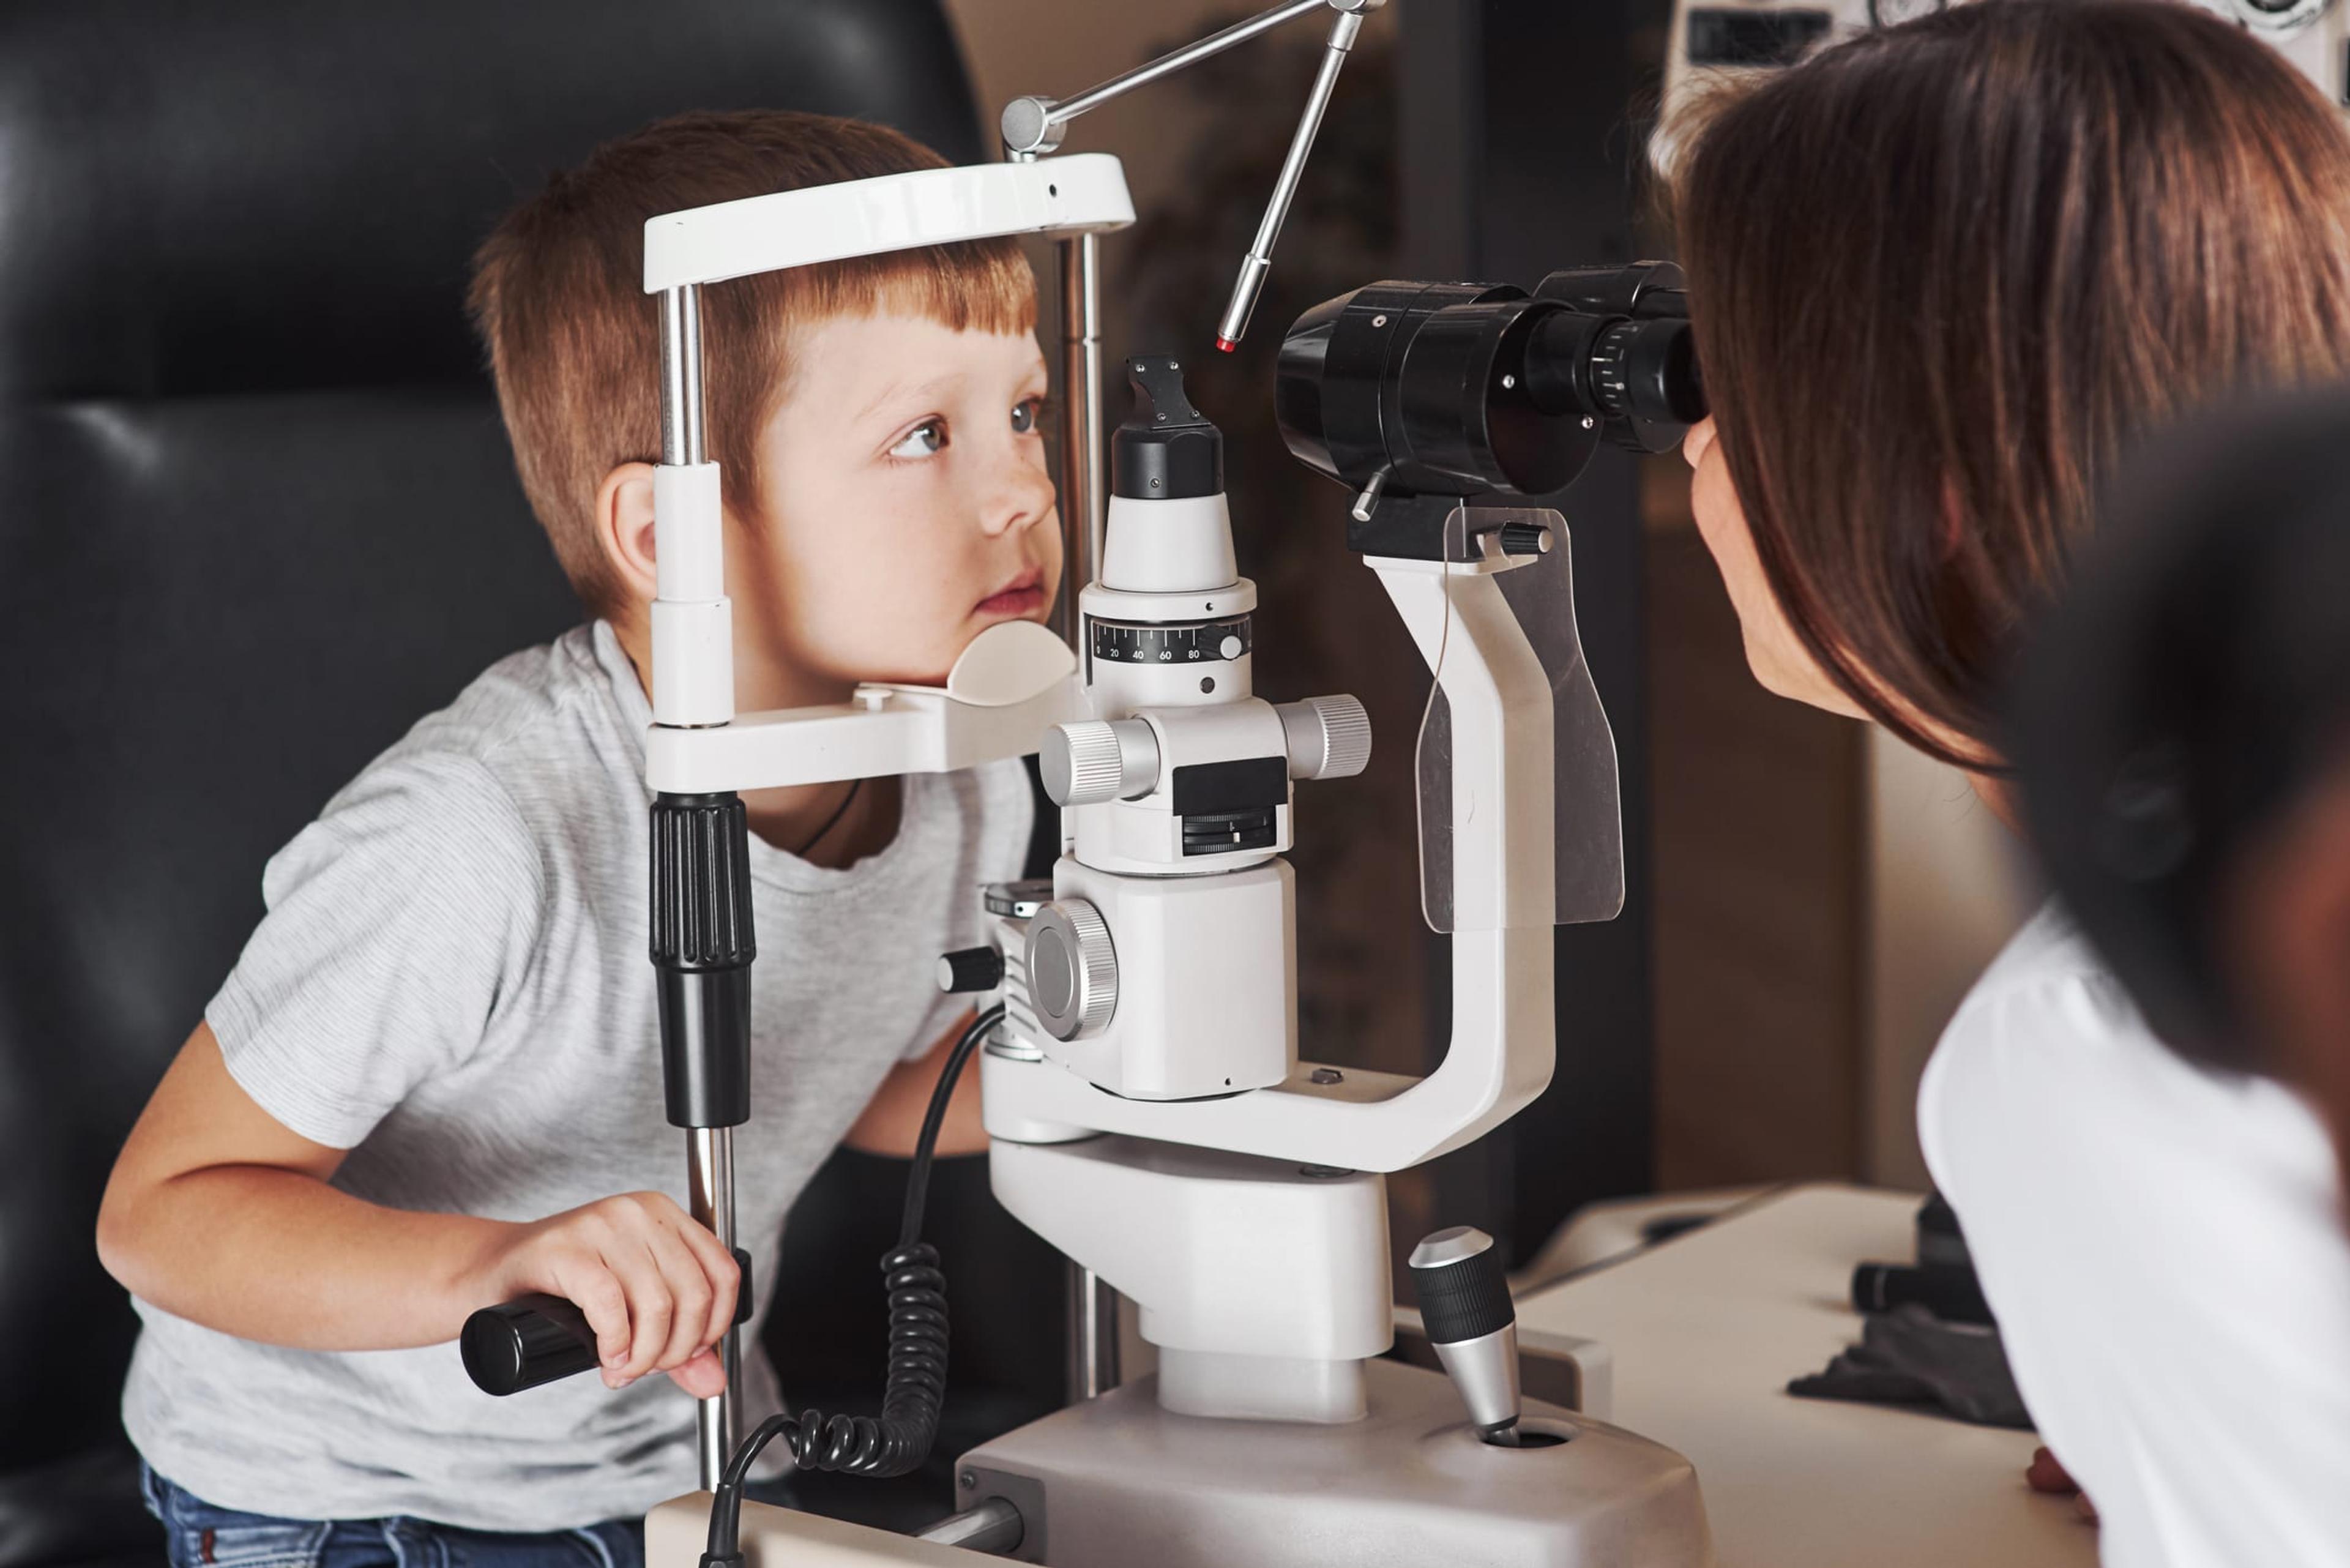 Little boy getting an eye exam by a female doctor.